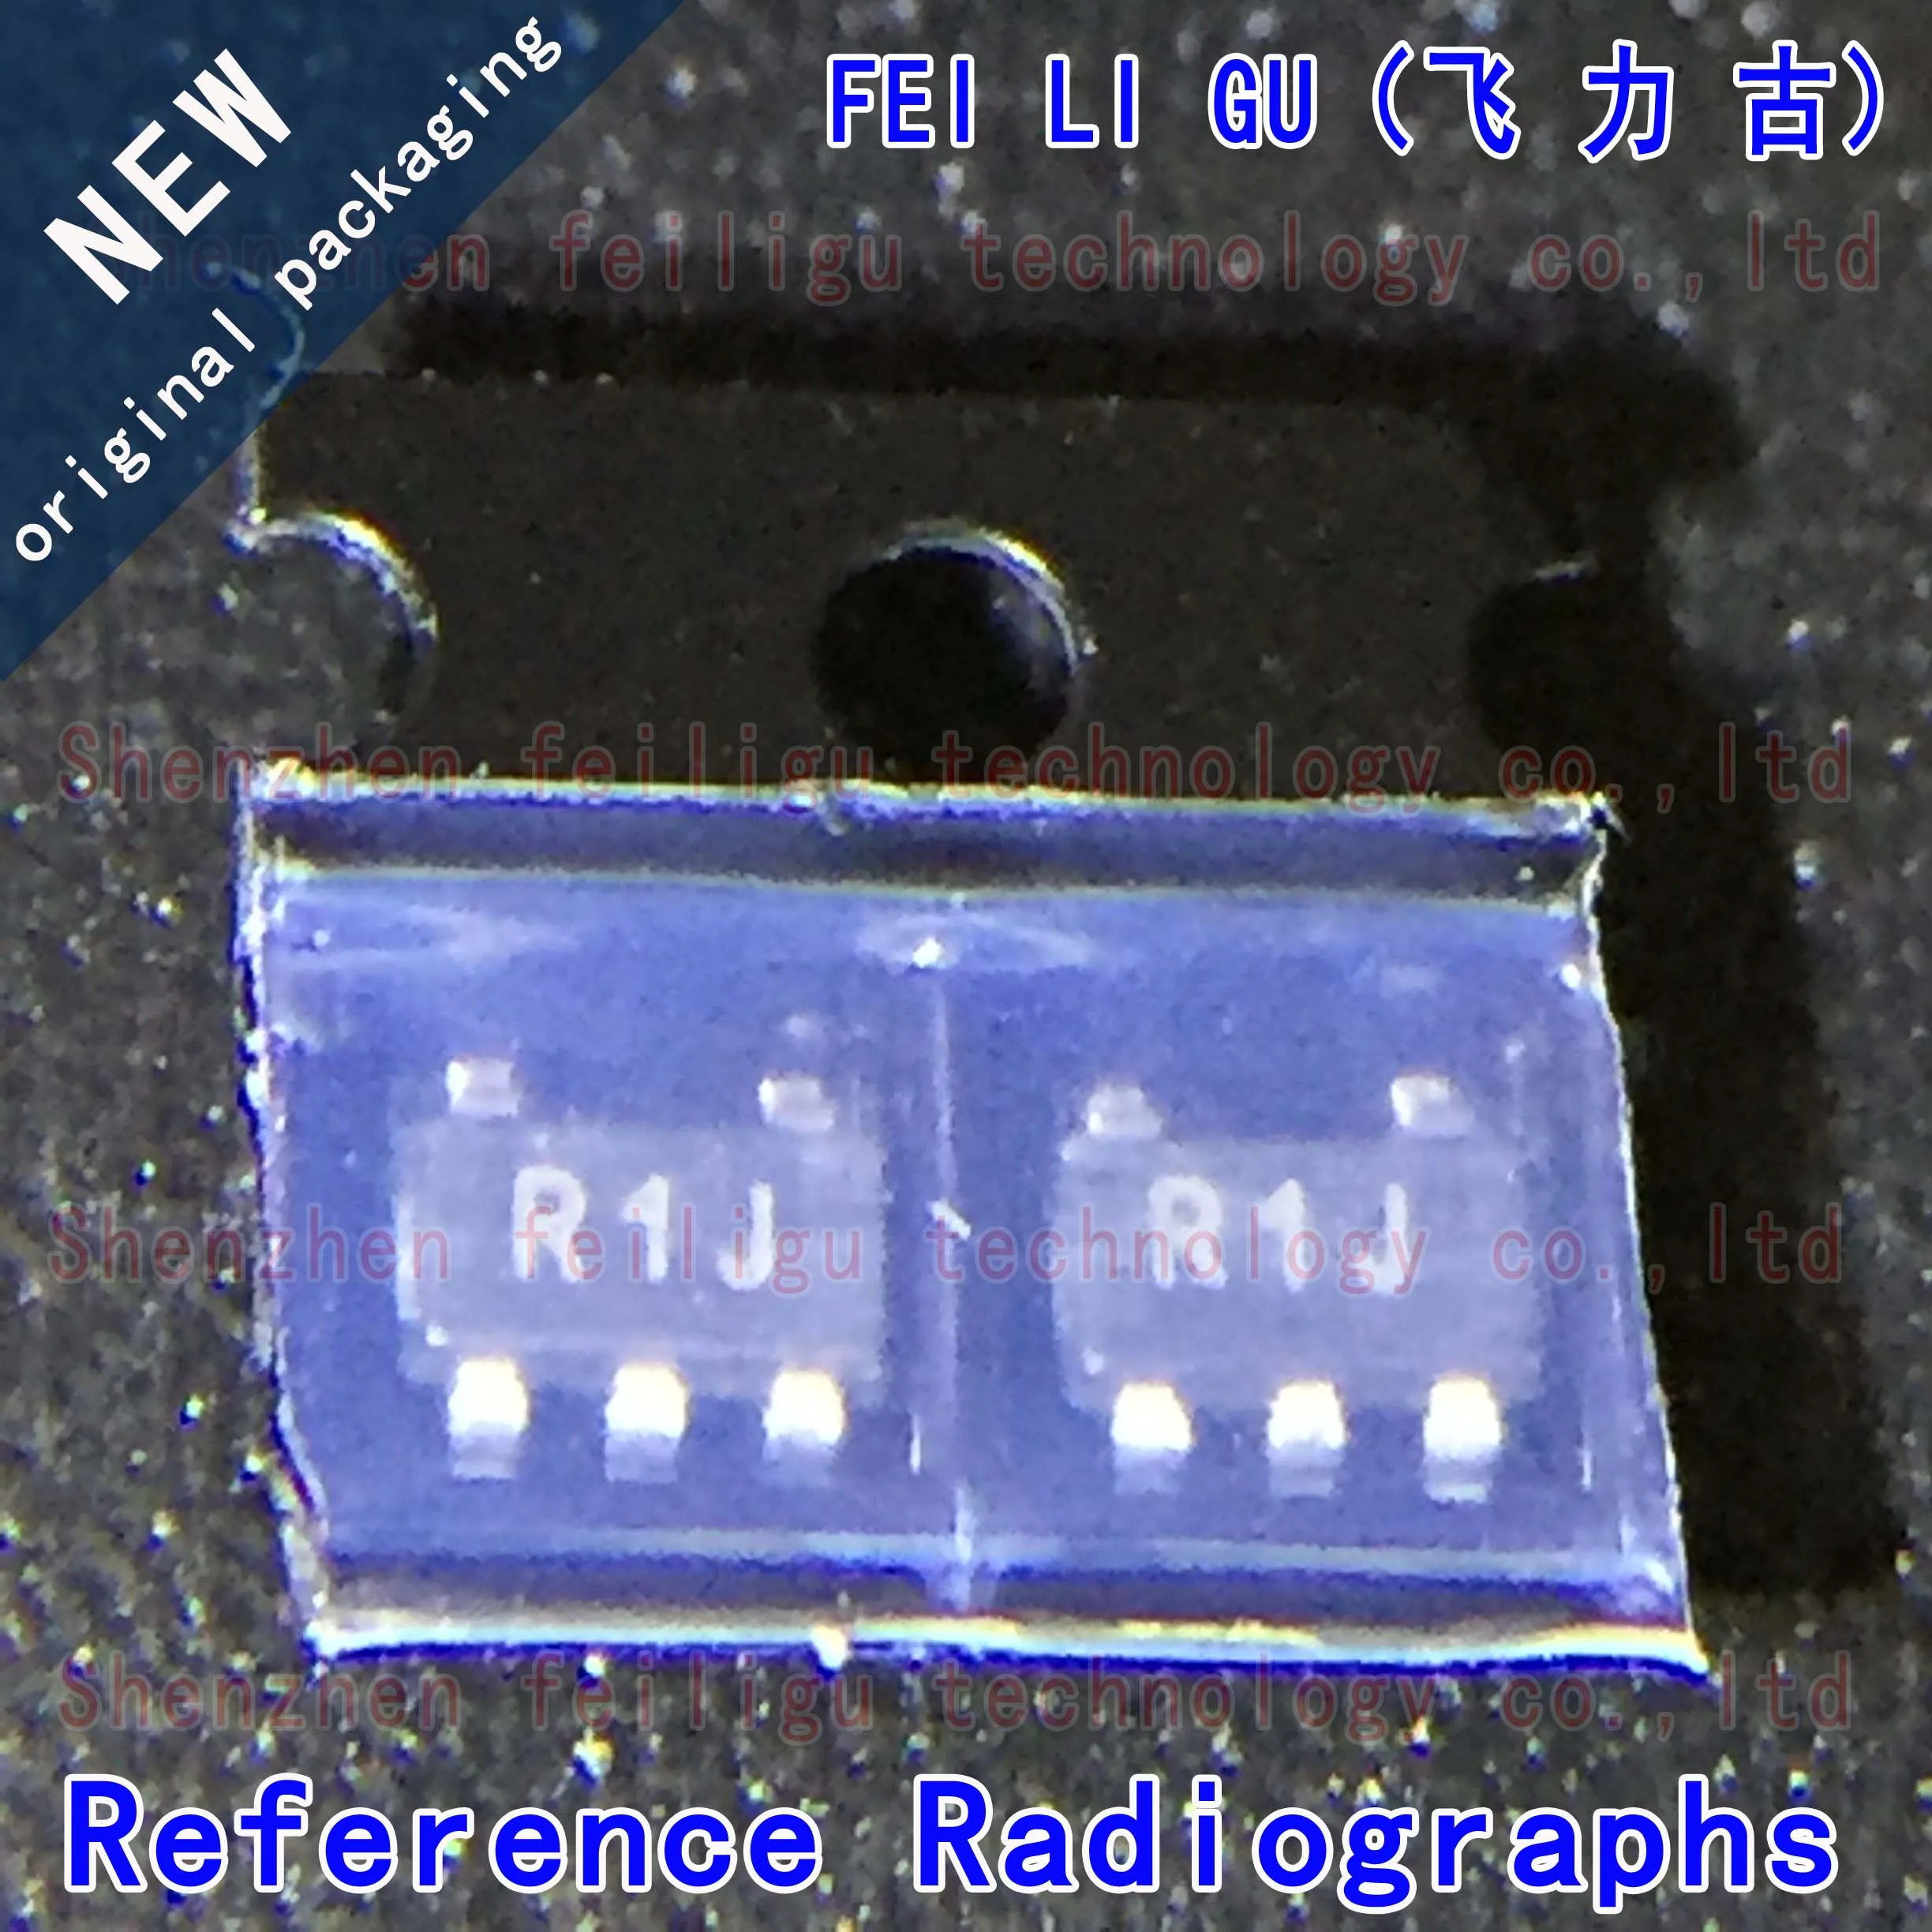 1pcs 100% new original ltc6240cs5 trmpbf ltc6240cs5 ltc6240 screen printing ltcrr package sot23 5 op amp chip 100% New original ADR03AUJZ-REEL7 ADR03AUJZ ADR03AUJ ADR03 Screen printing:R1J Package:SOT23-5 Voltage reference chip